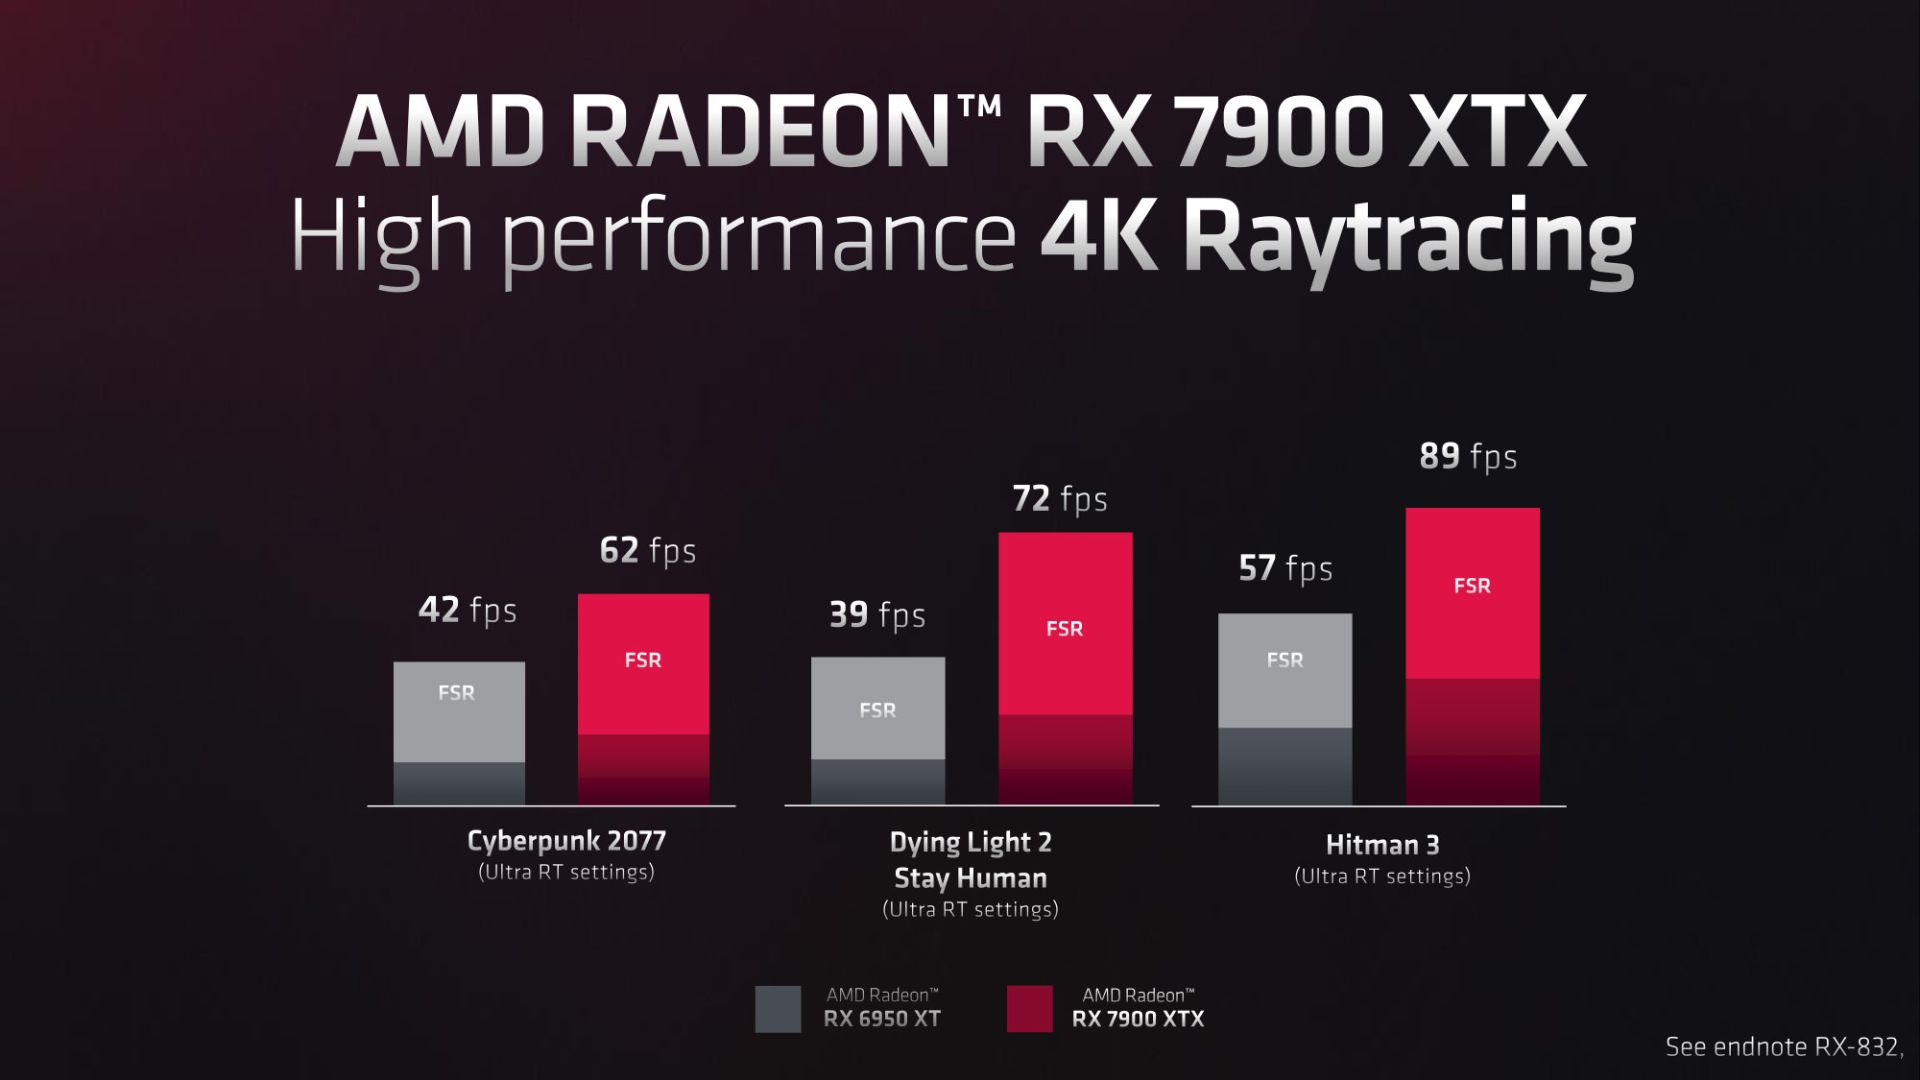 عملکرد گرافیک AMD RX 7900 XTX با رهگیری پرتو و وضوح 4K